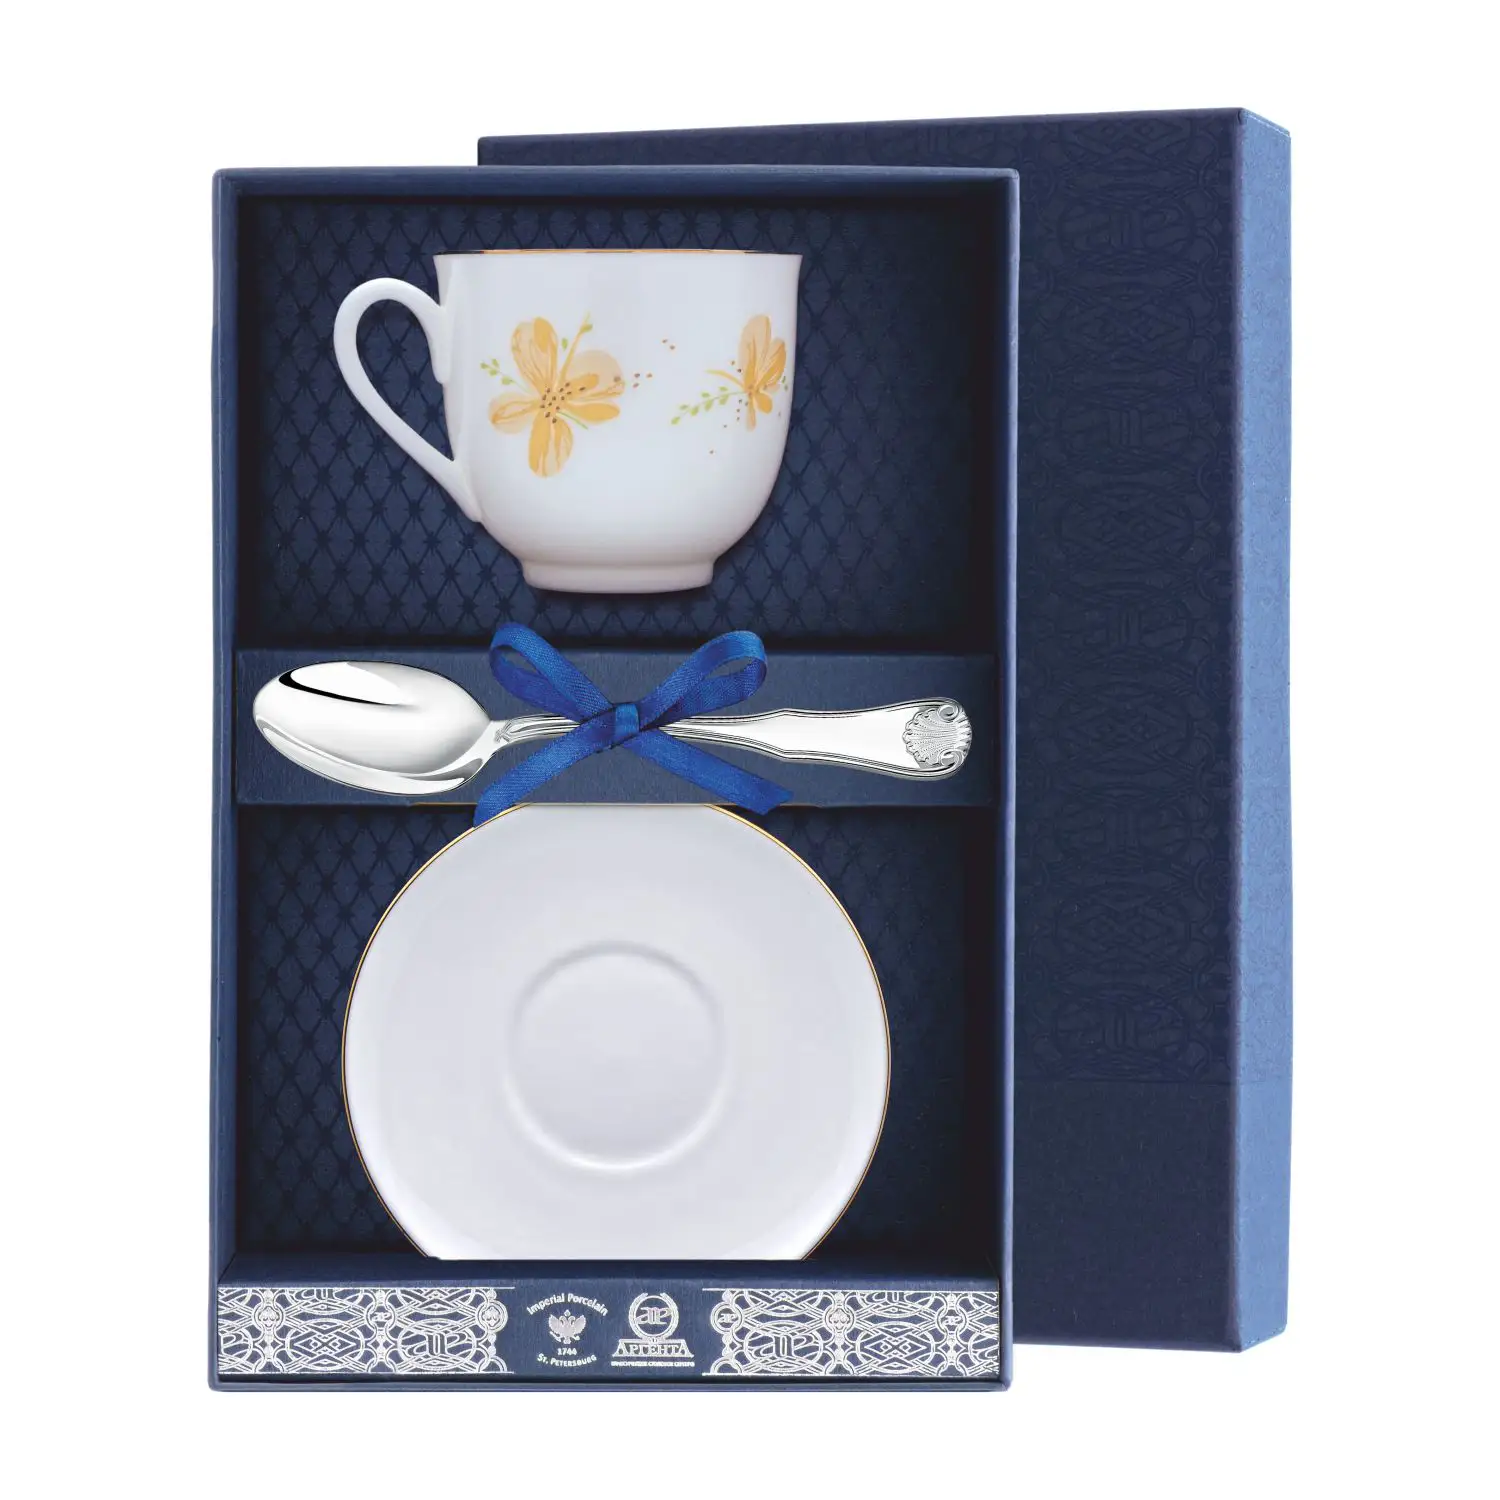 Набор чайный Ландыш - Желтые цветы: блюдце, ложка, чашка (Серебро 925) набор чайный ландыш фигурное катание блюдце ложка чашка серебро 925